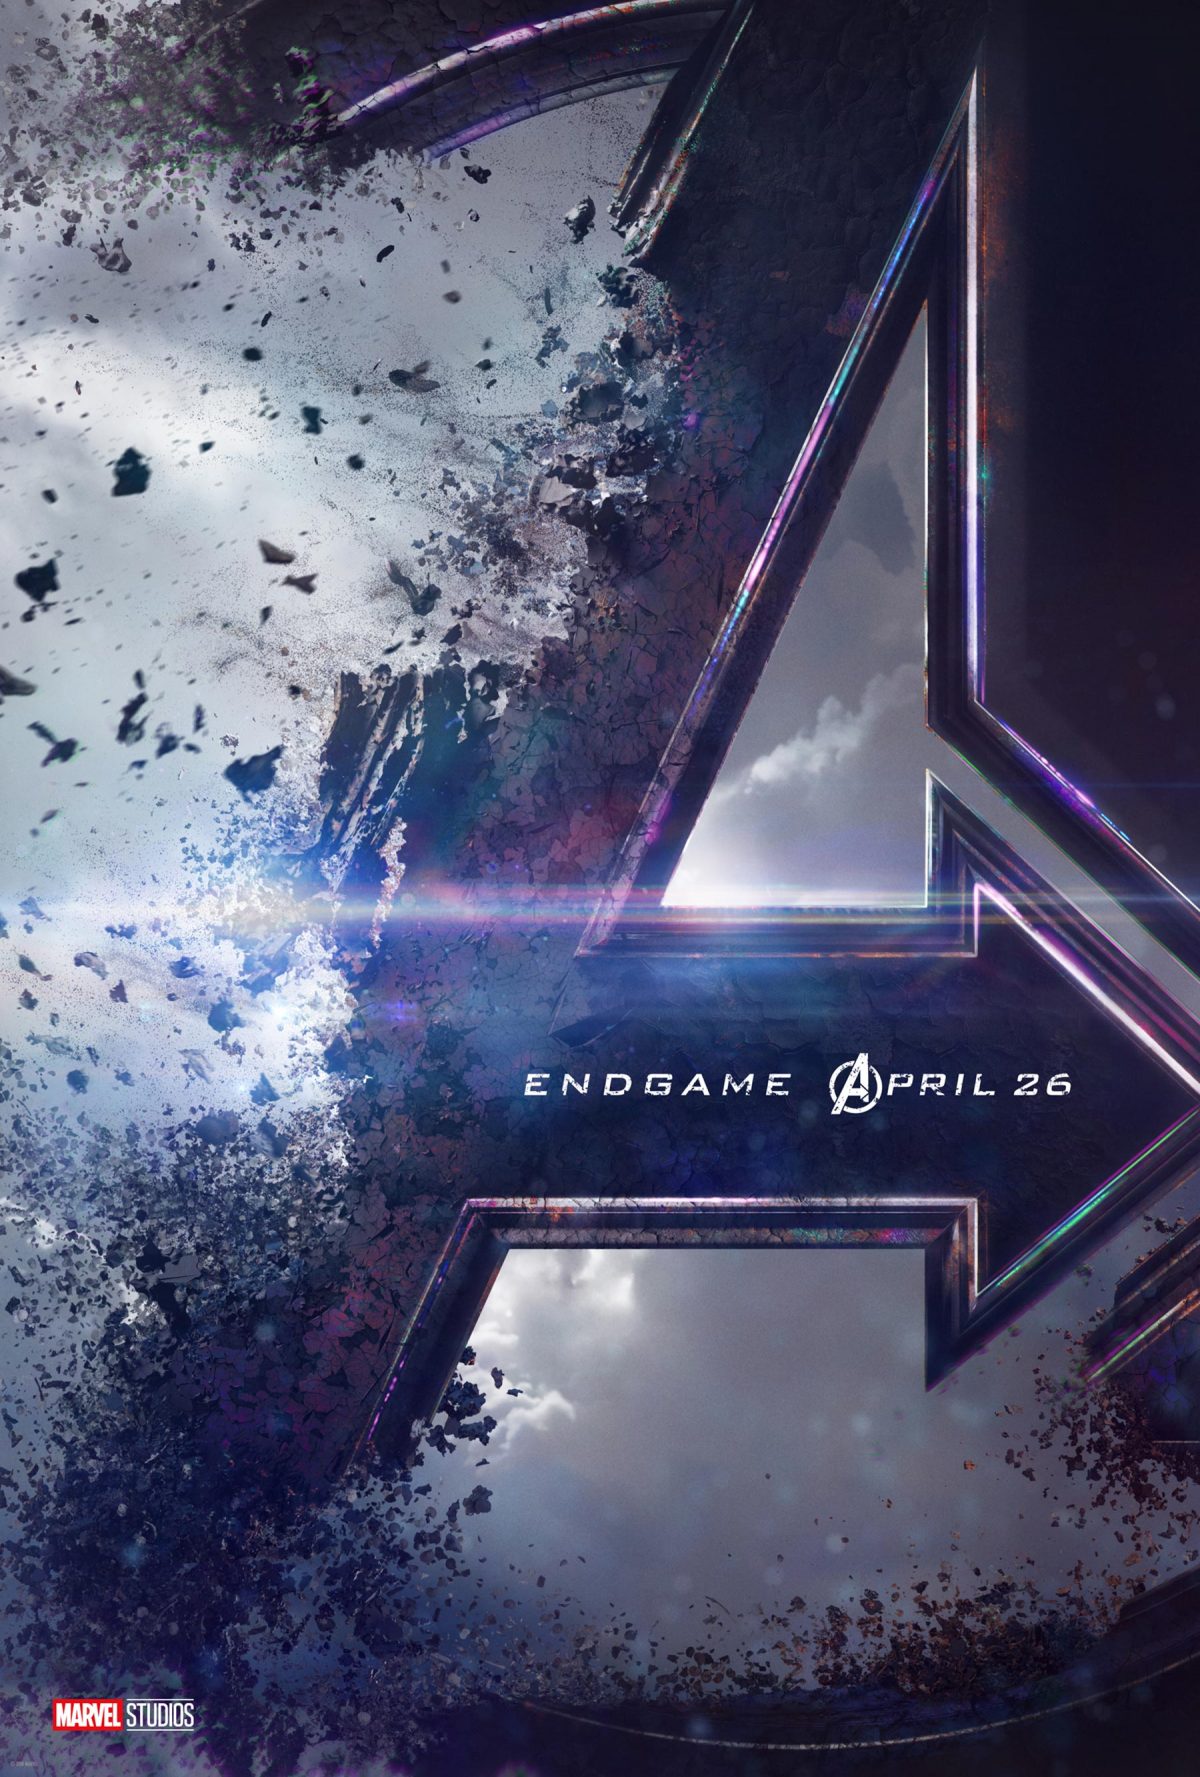 Avengers: Endgame Big Game TV Spot  #AvengersEndgame